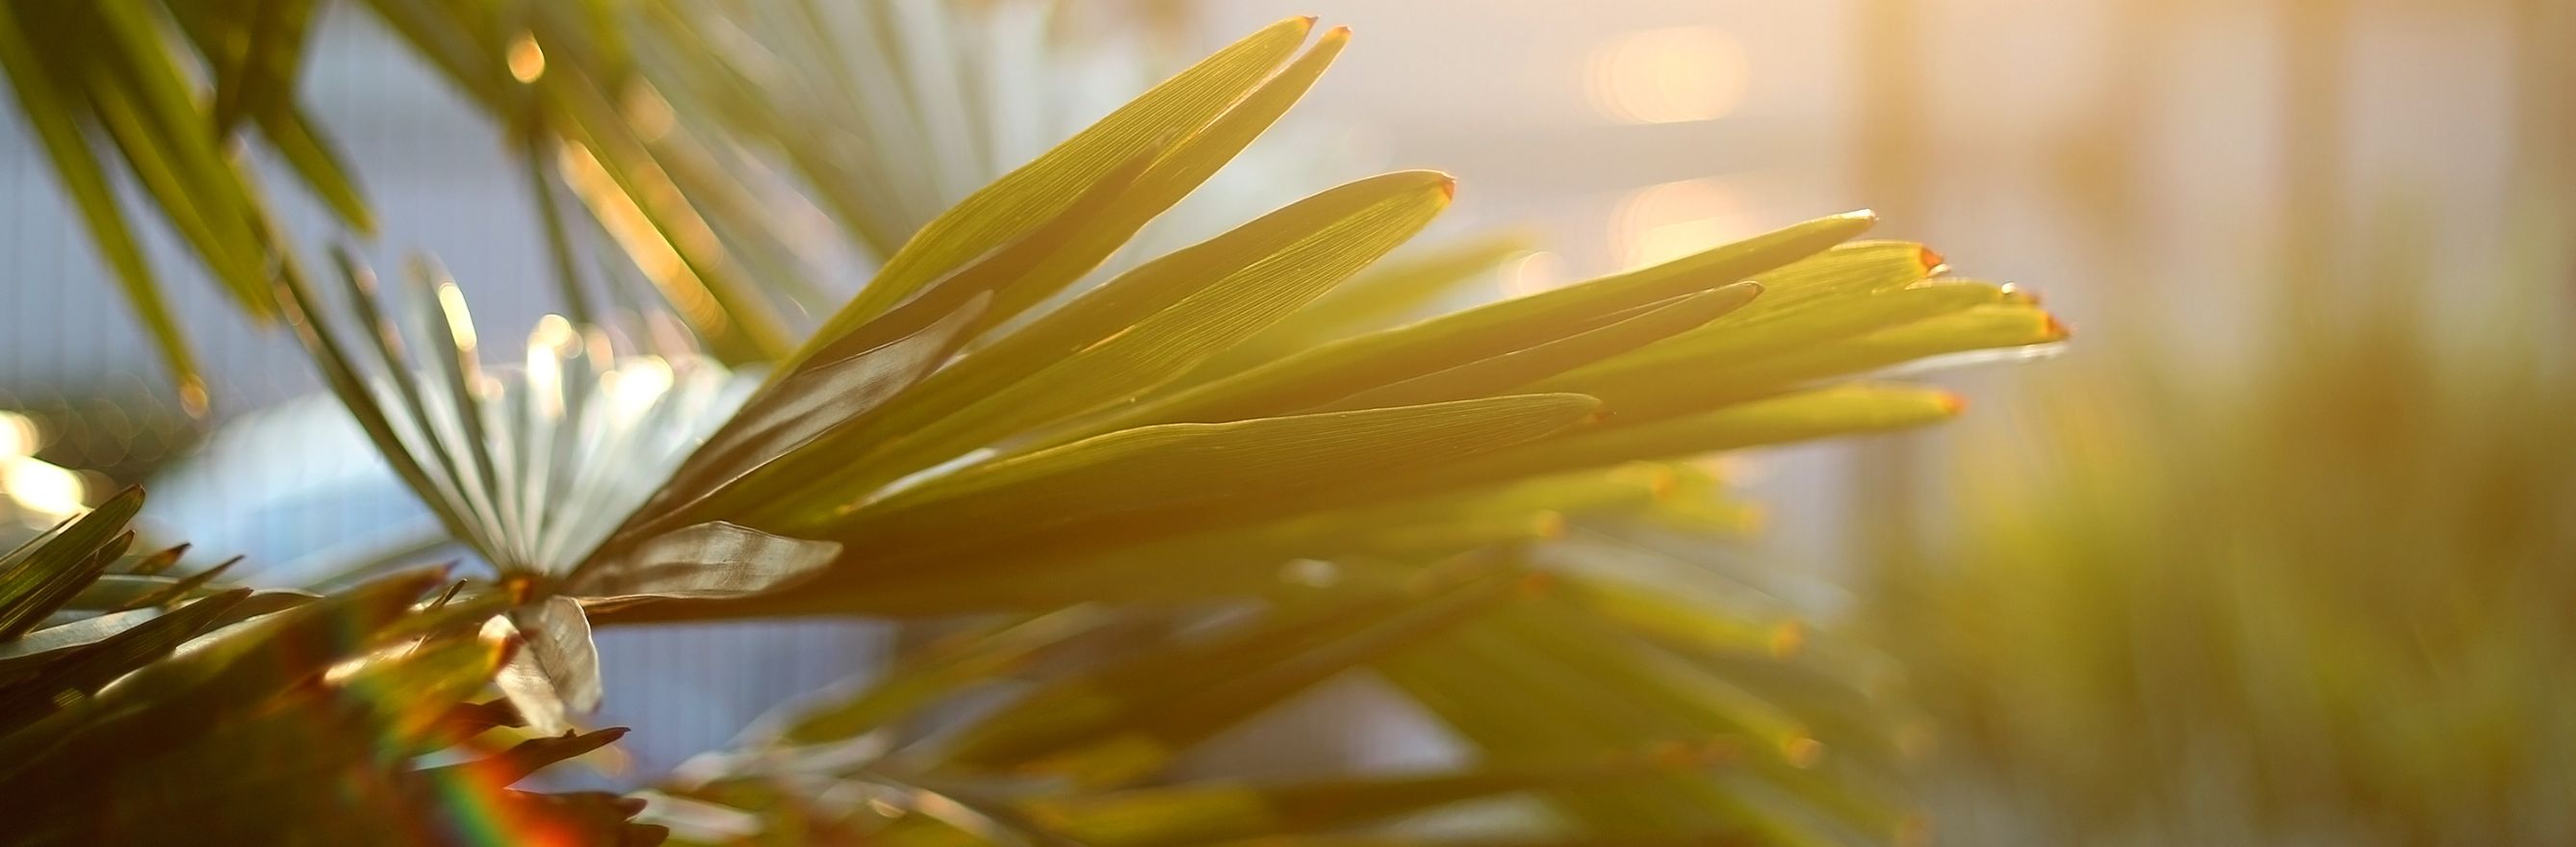 Feuille de palmier avec rayon de soleil